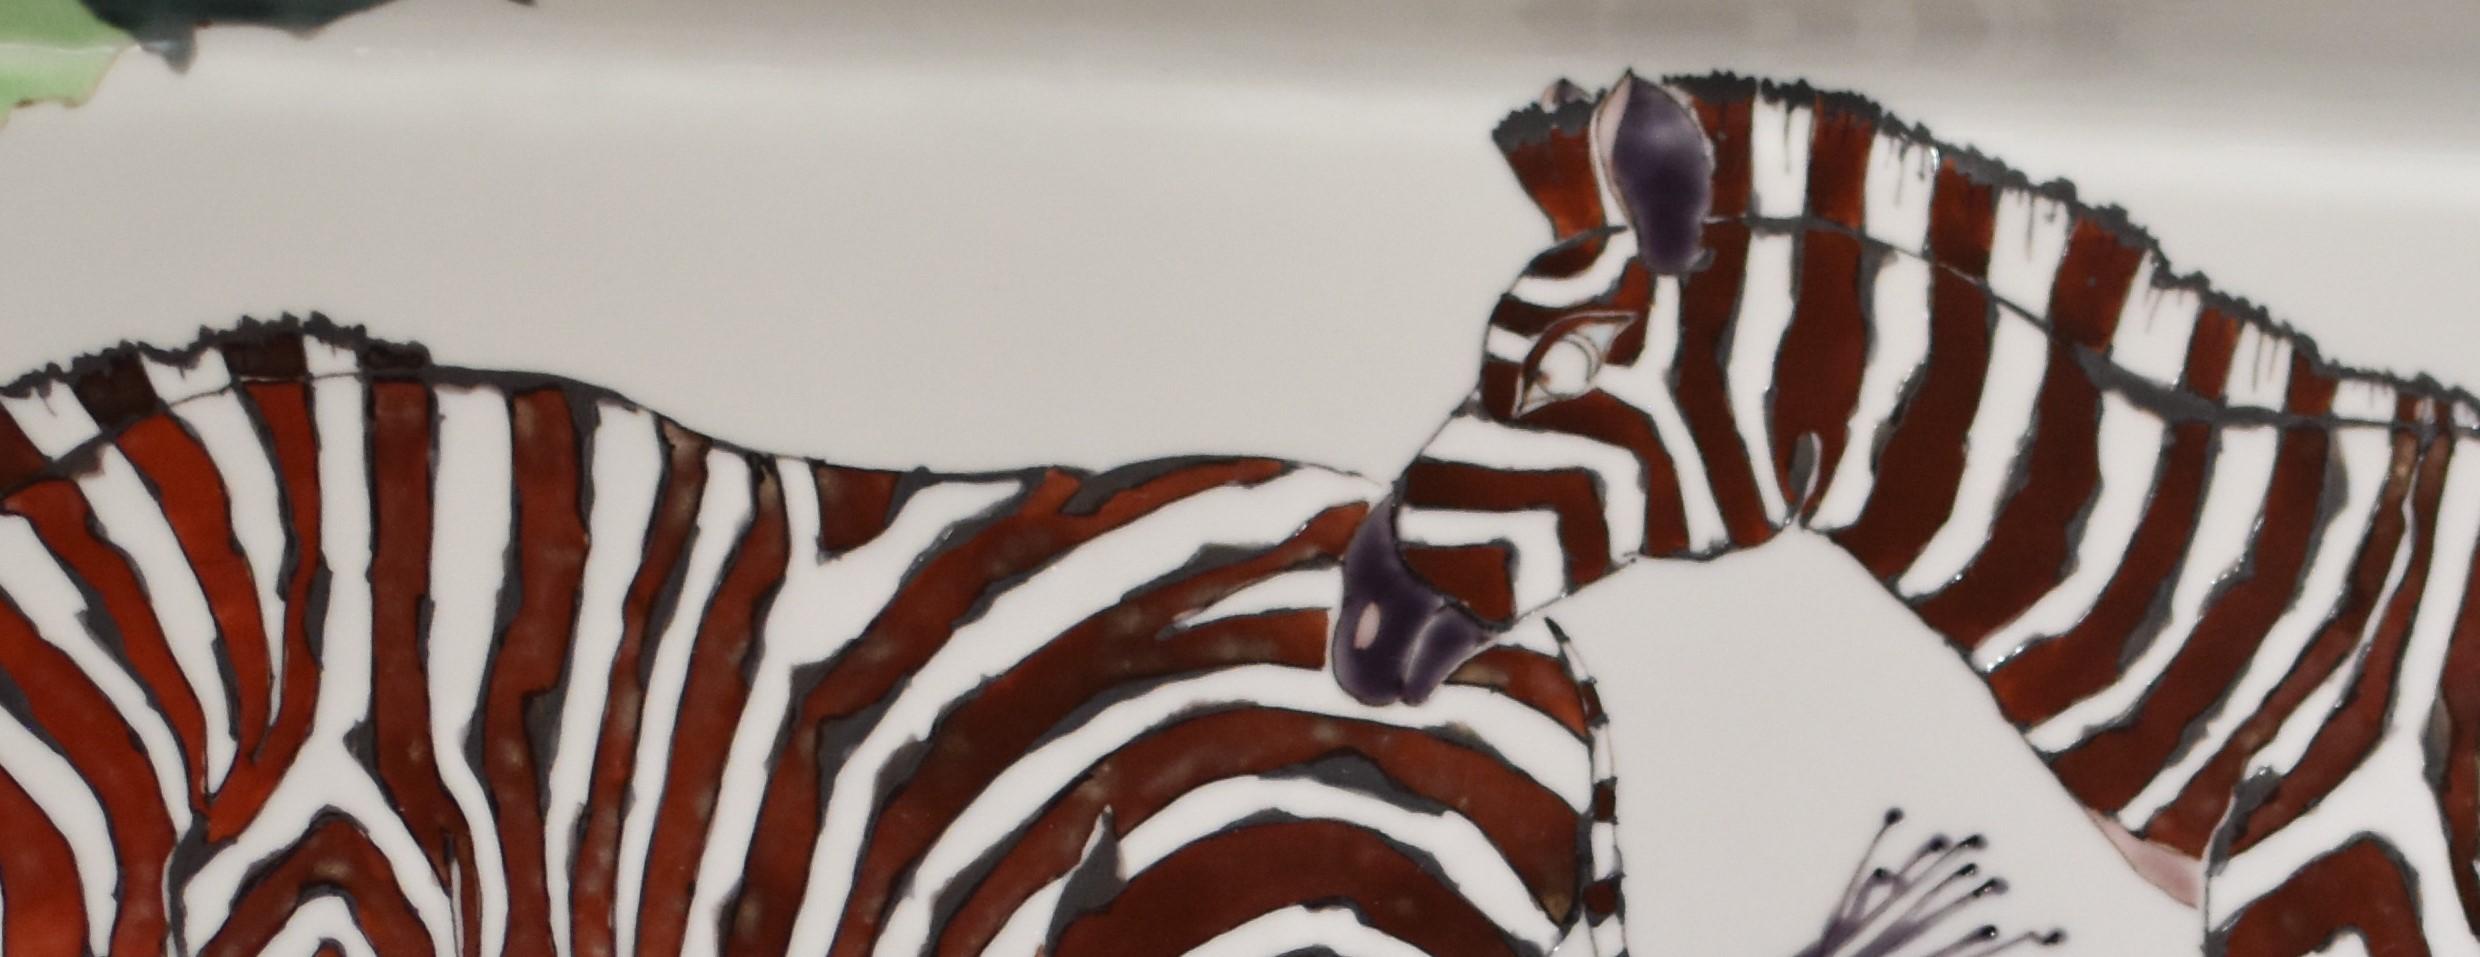 Außergewöhnliches, atemberaubendes, zeitgenössisches, signiertes japanisches Porzellan in Museumsqualität in einer eleganten, rechteckigen Form mit einer einzigartigen Interpretation von Zebras in einem atemberaubenden Schokoladenbraun. Auf der